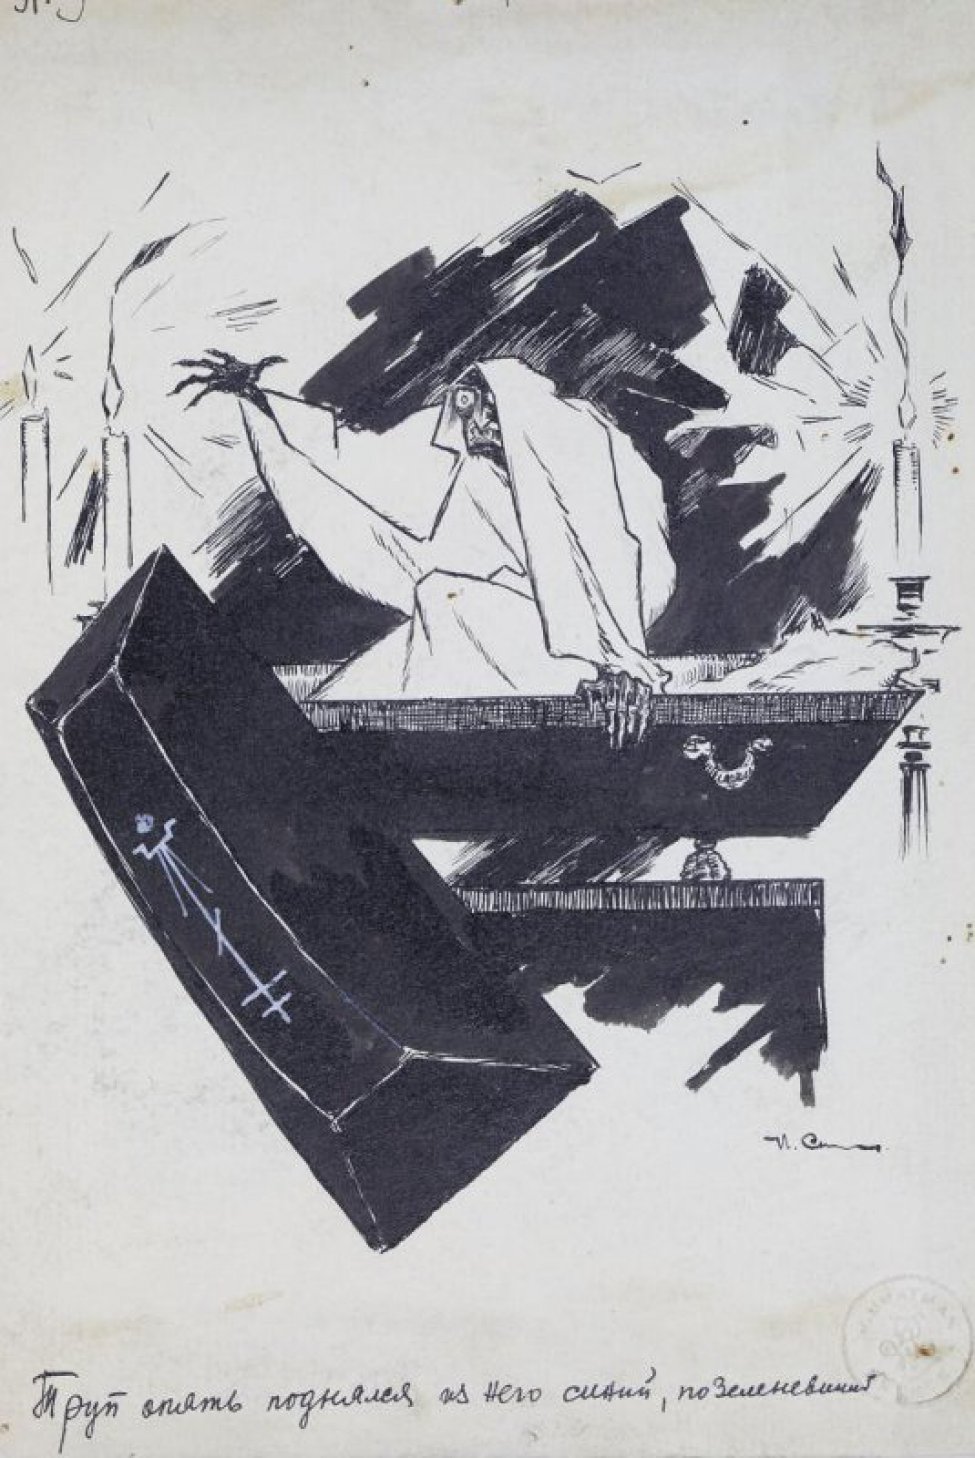 Иллюстрация 1919 б.к